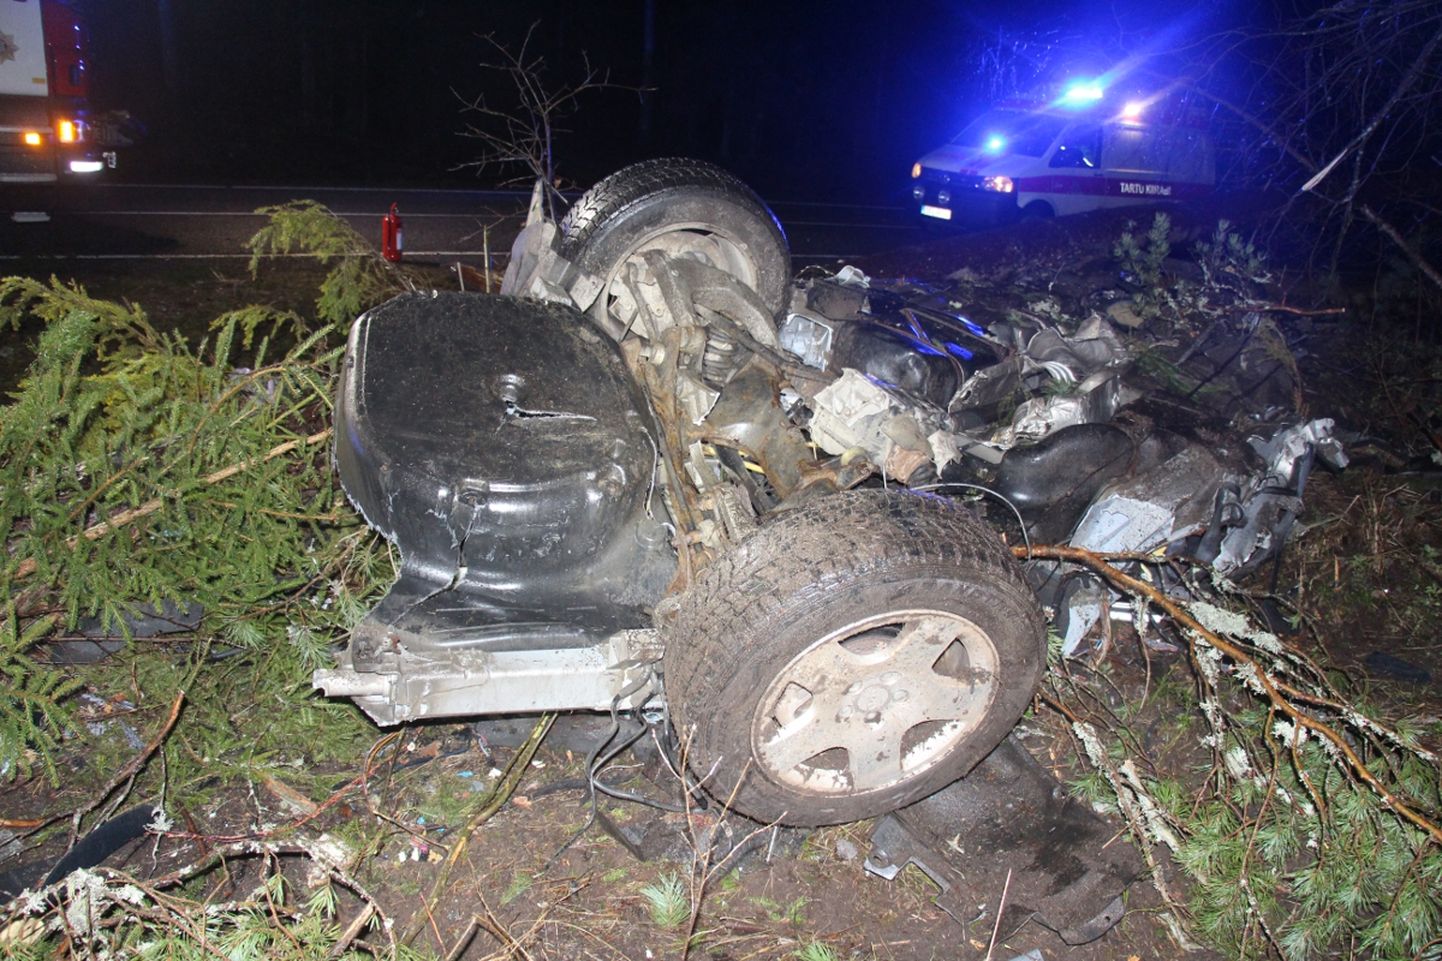 Reede hommikul avastati Elva lähistel teelt välja sõitnud auto vrakk. Raskes liiklusõnnetuses hukkus 29-aastane mees.